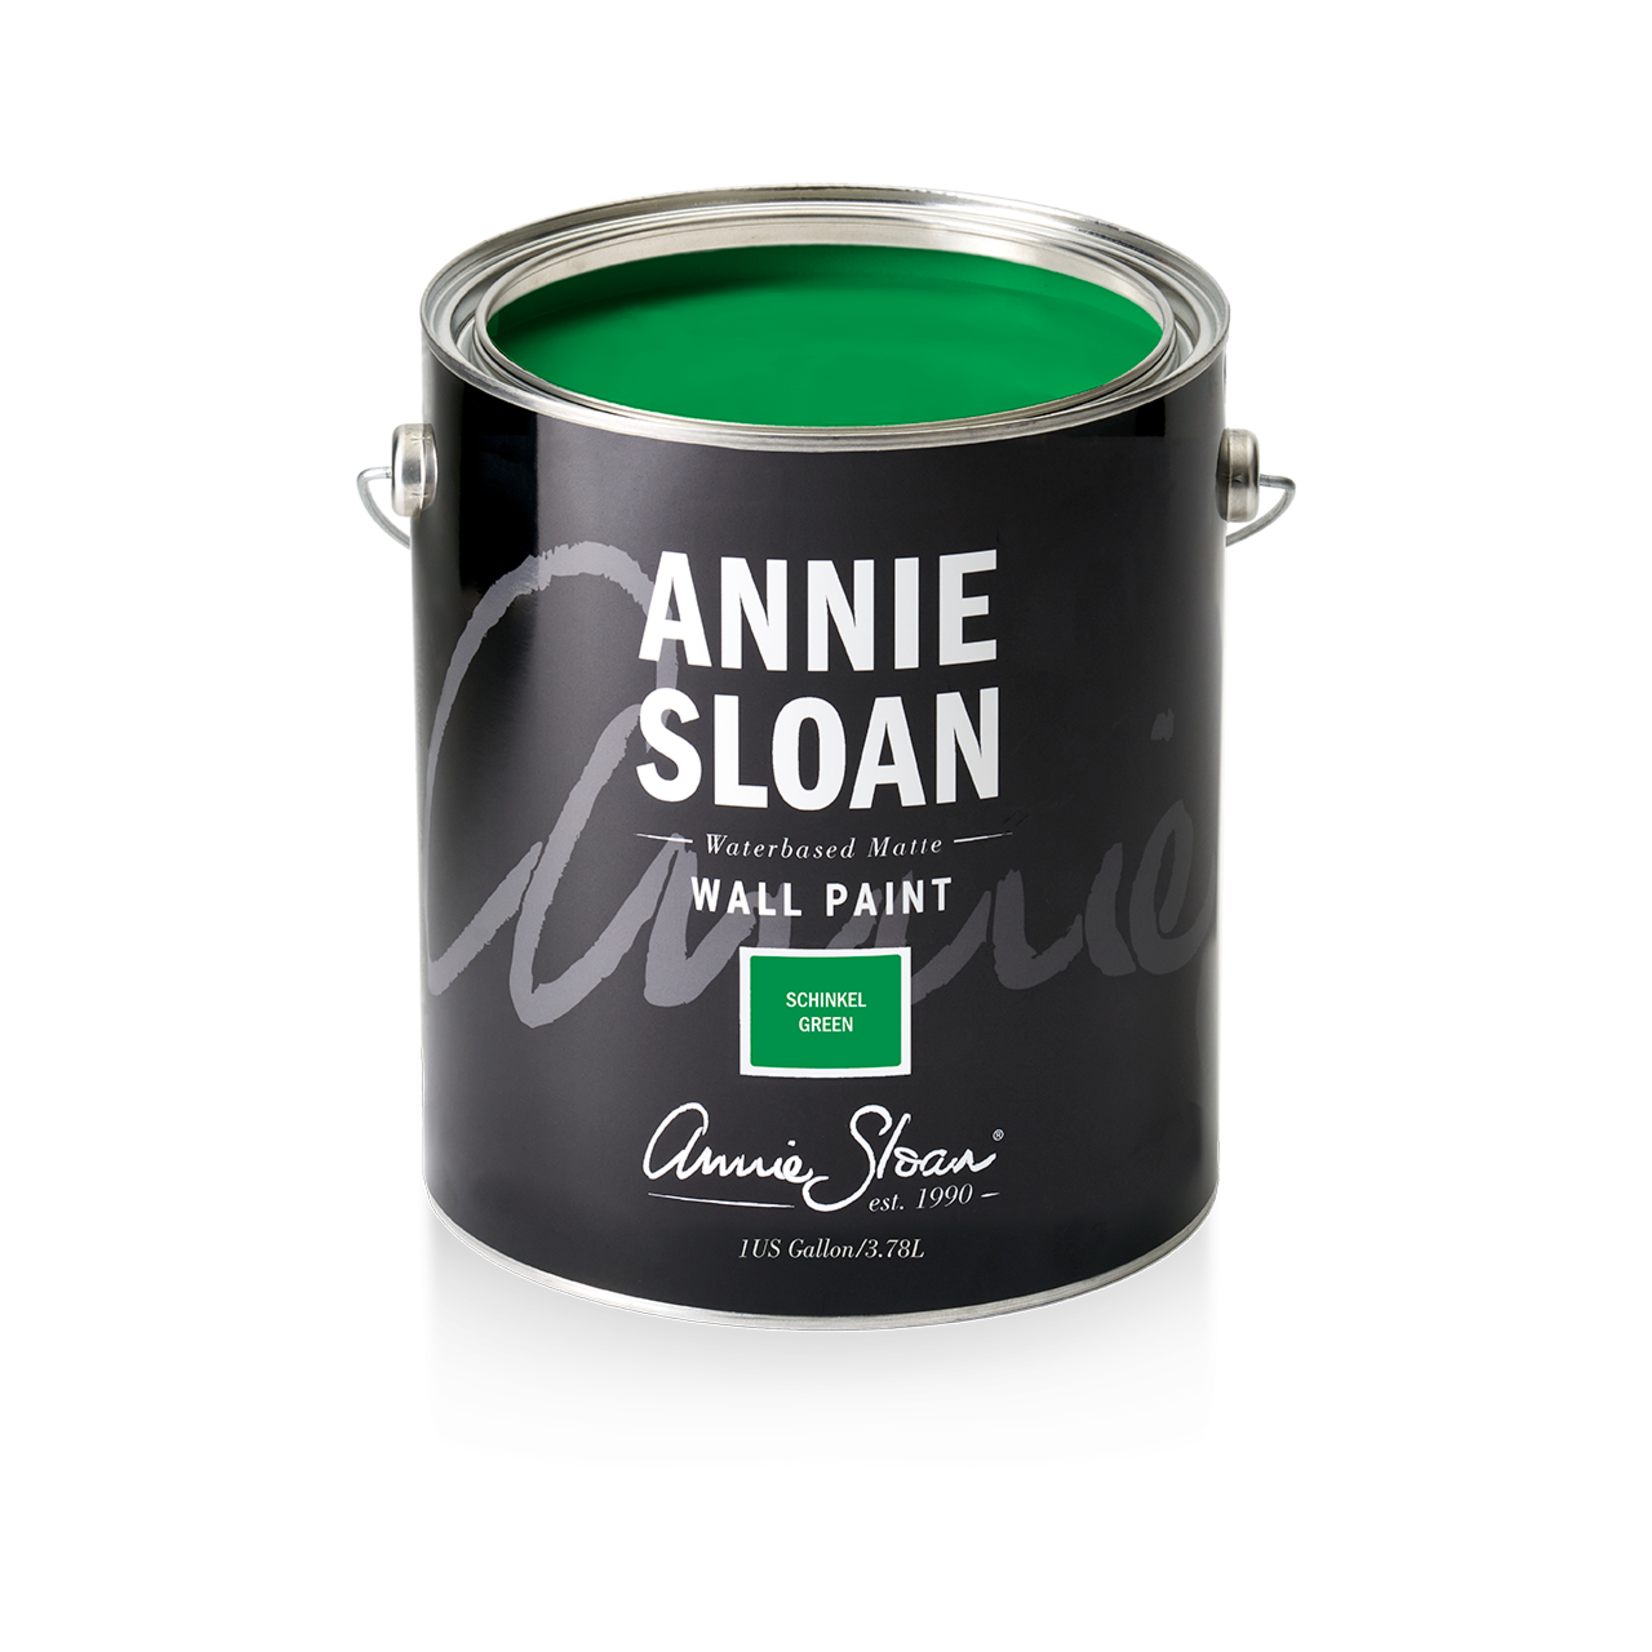 Annie Sloan Annie Sloan Wall Paint 1 Gallon Schinkel Green